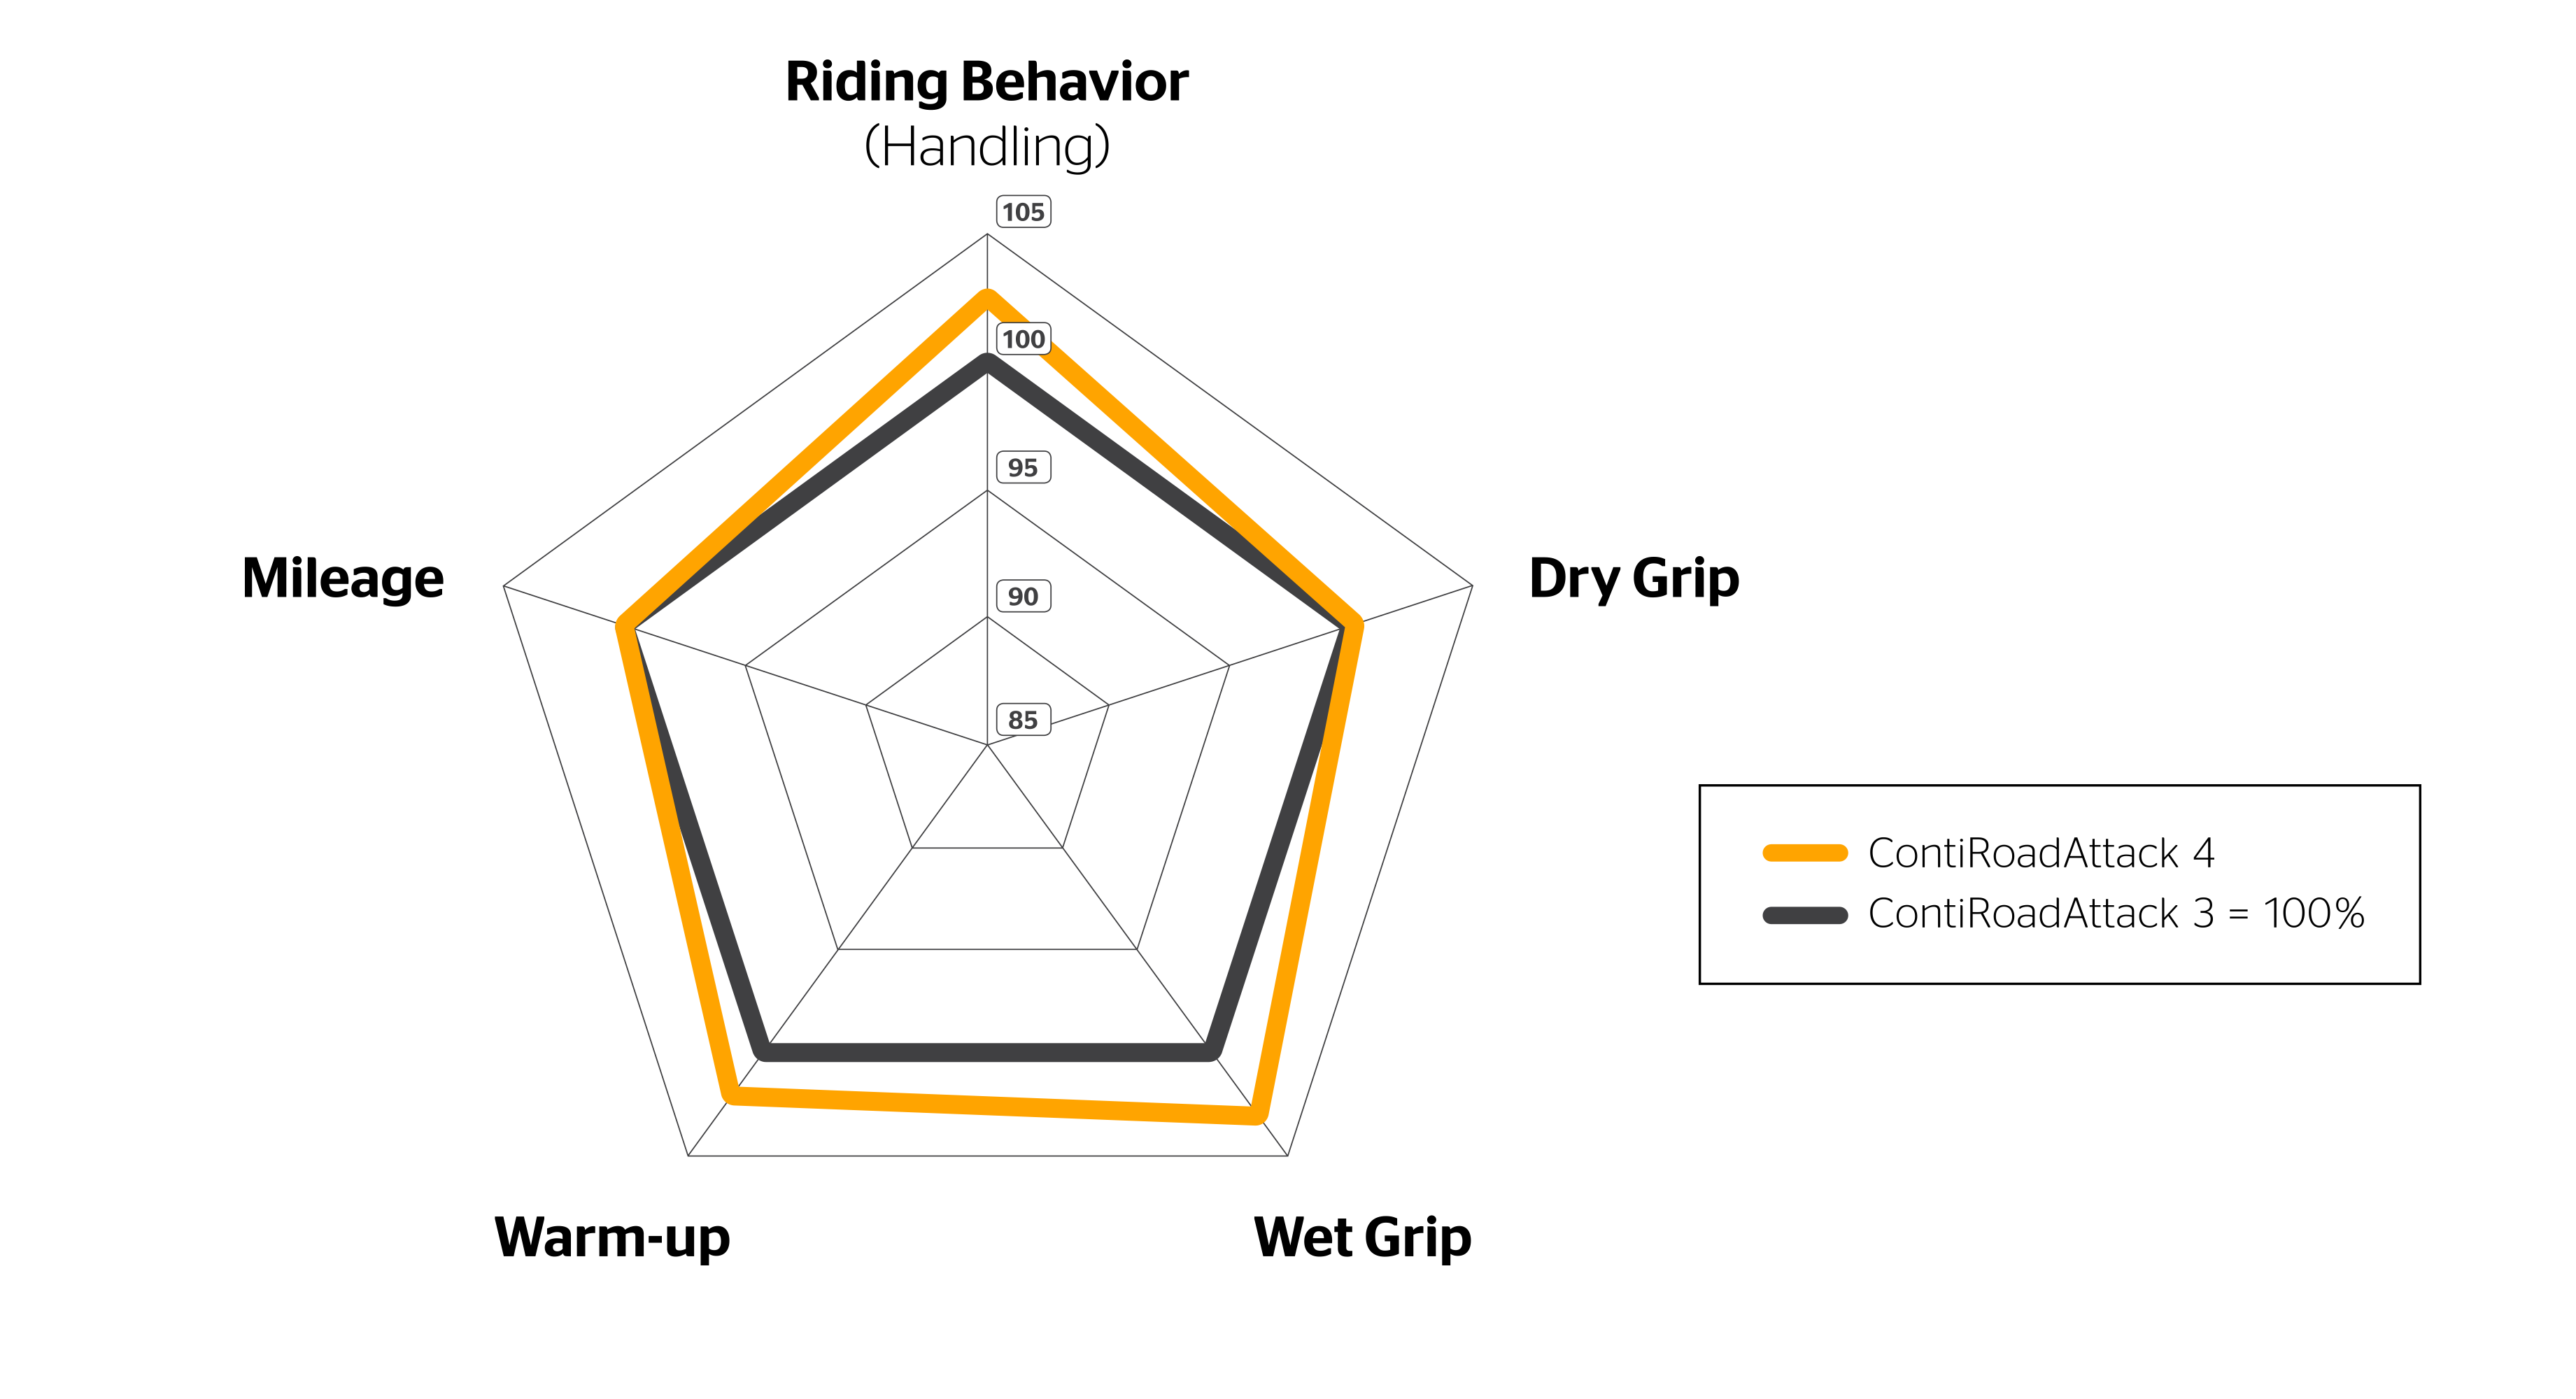 Spider Diagram of the ContiRoadAttack 4